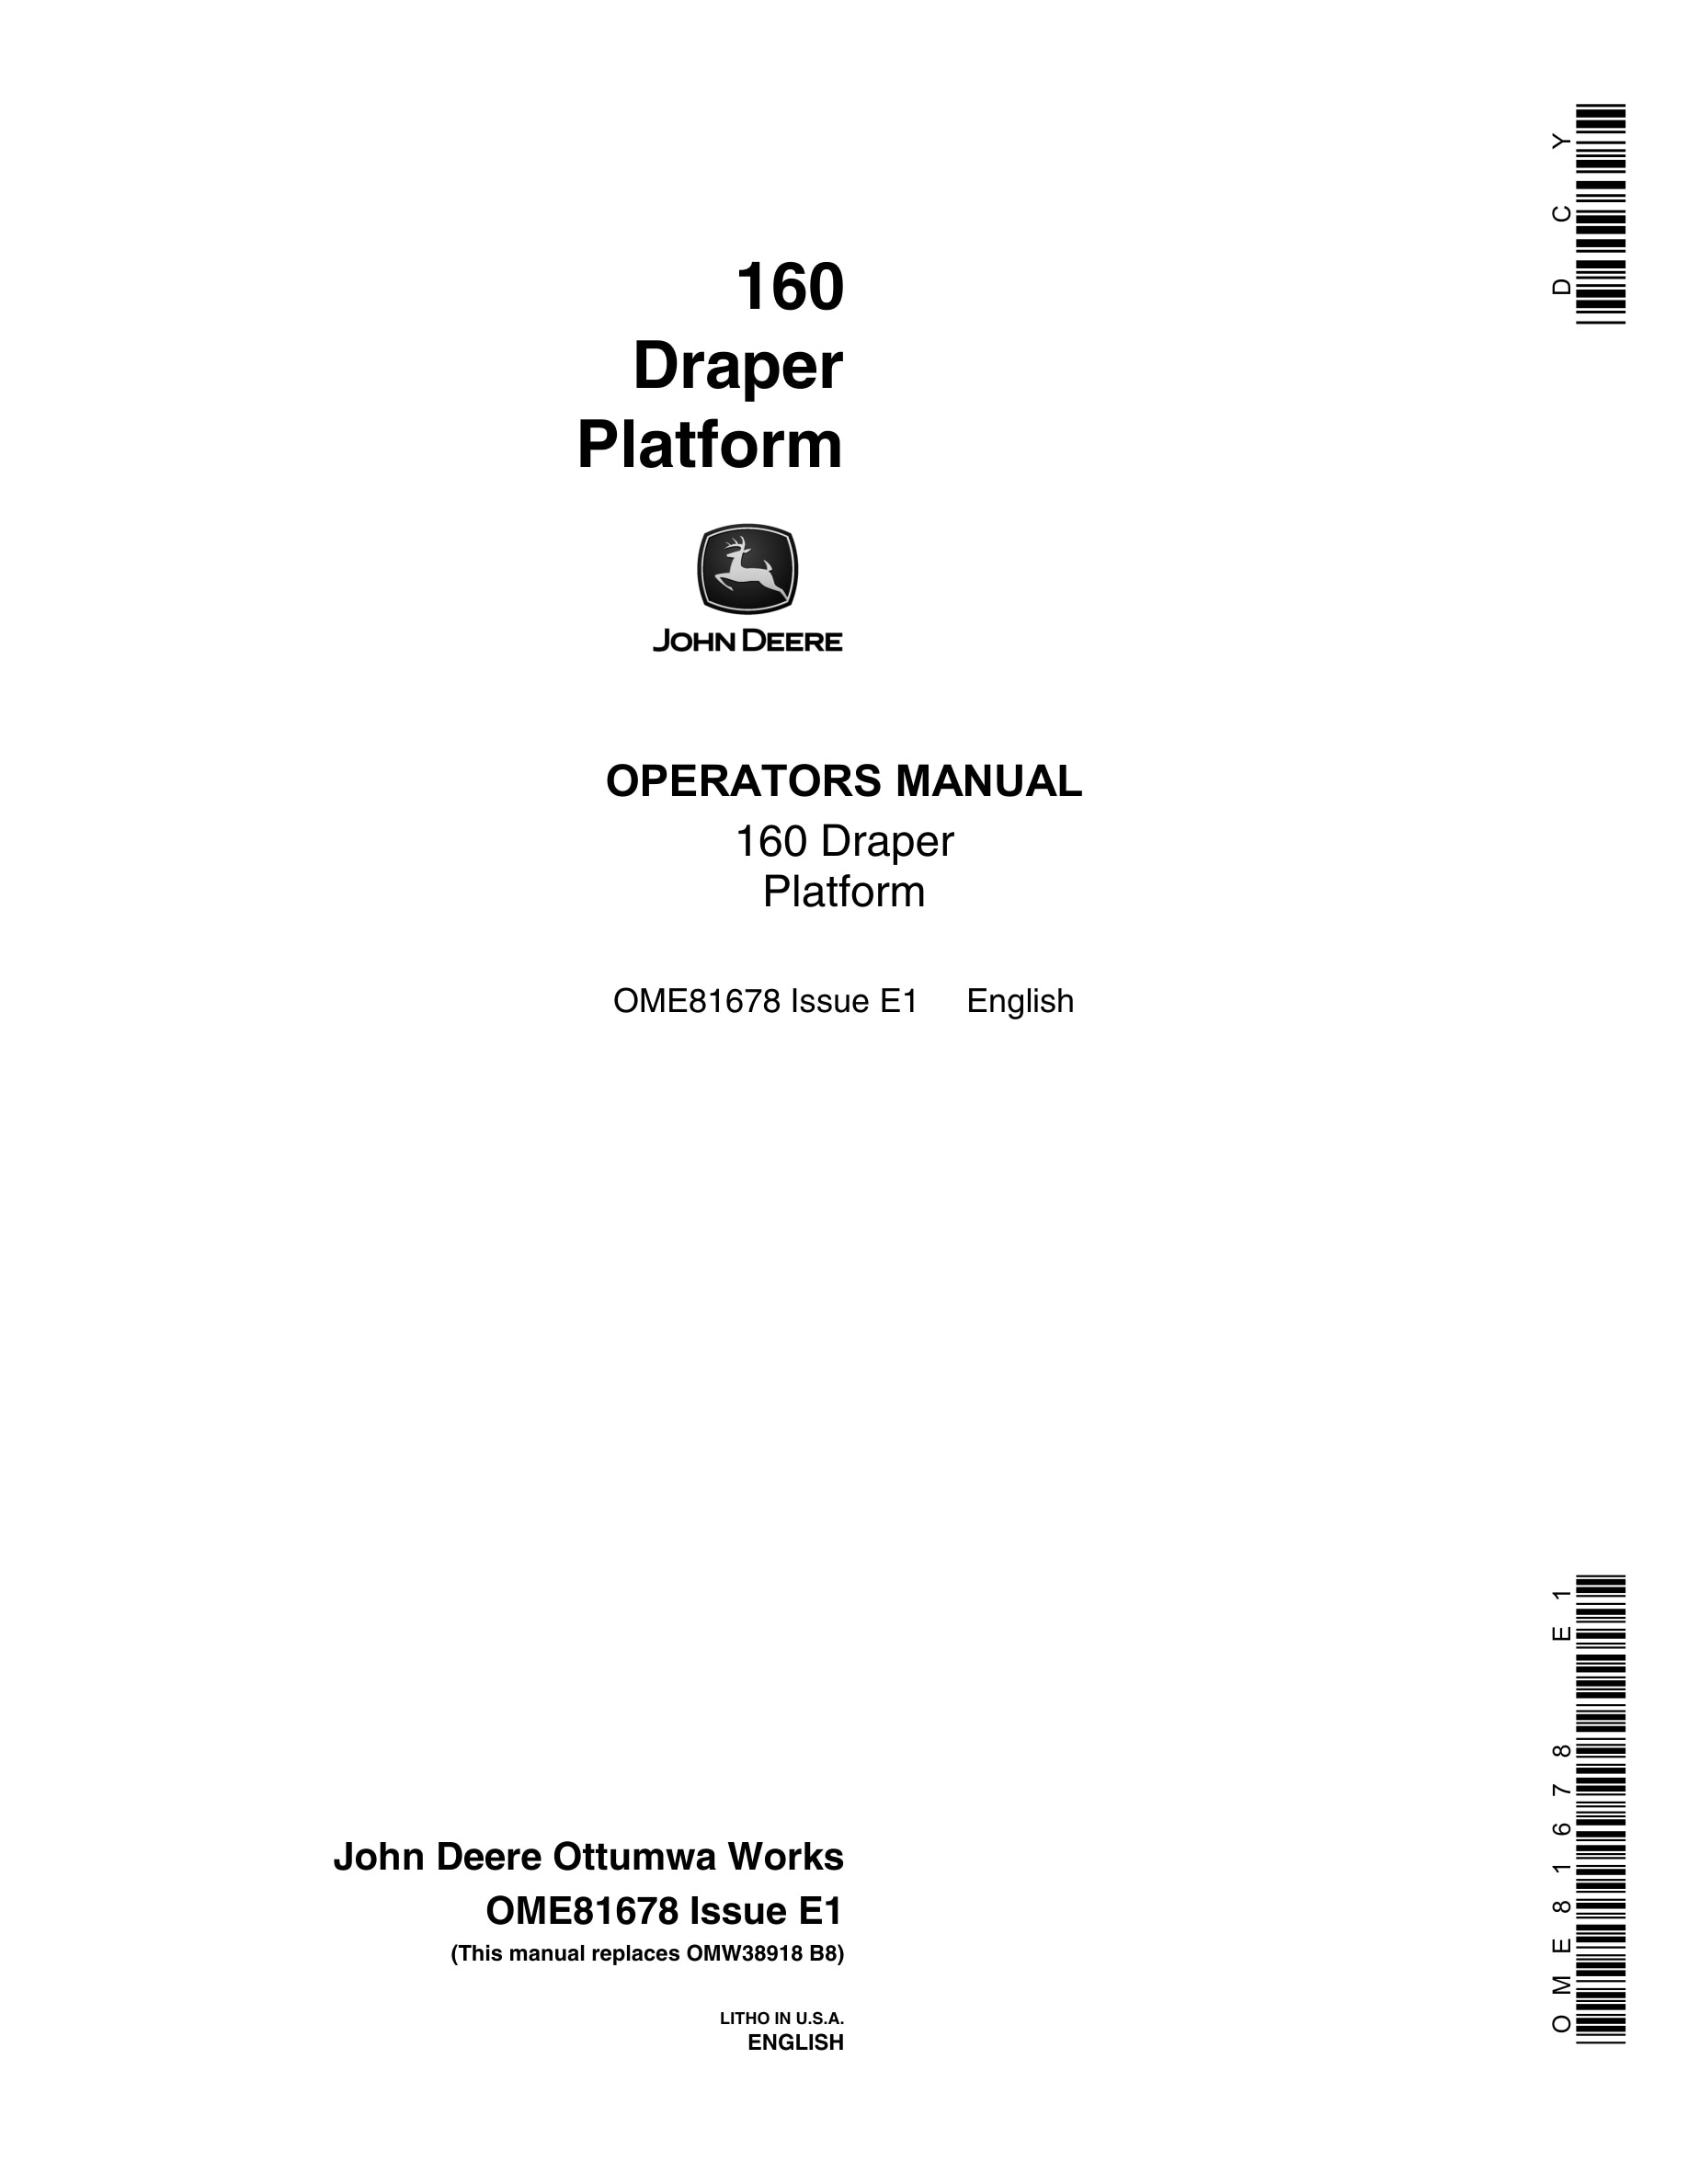 John Deere 160 Draper Platform Operator Manual OME81678-1